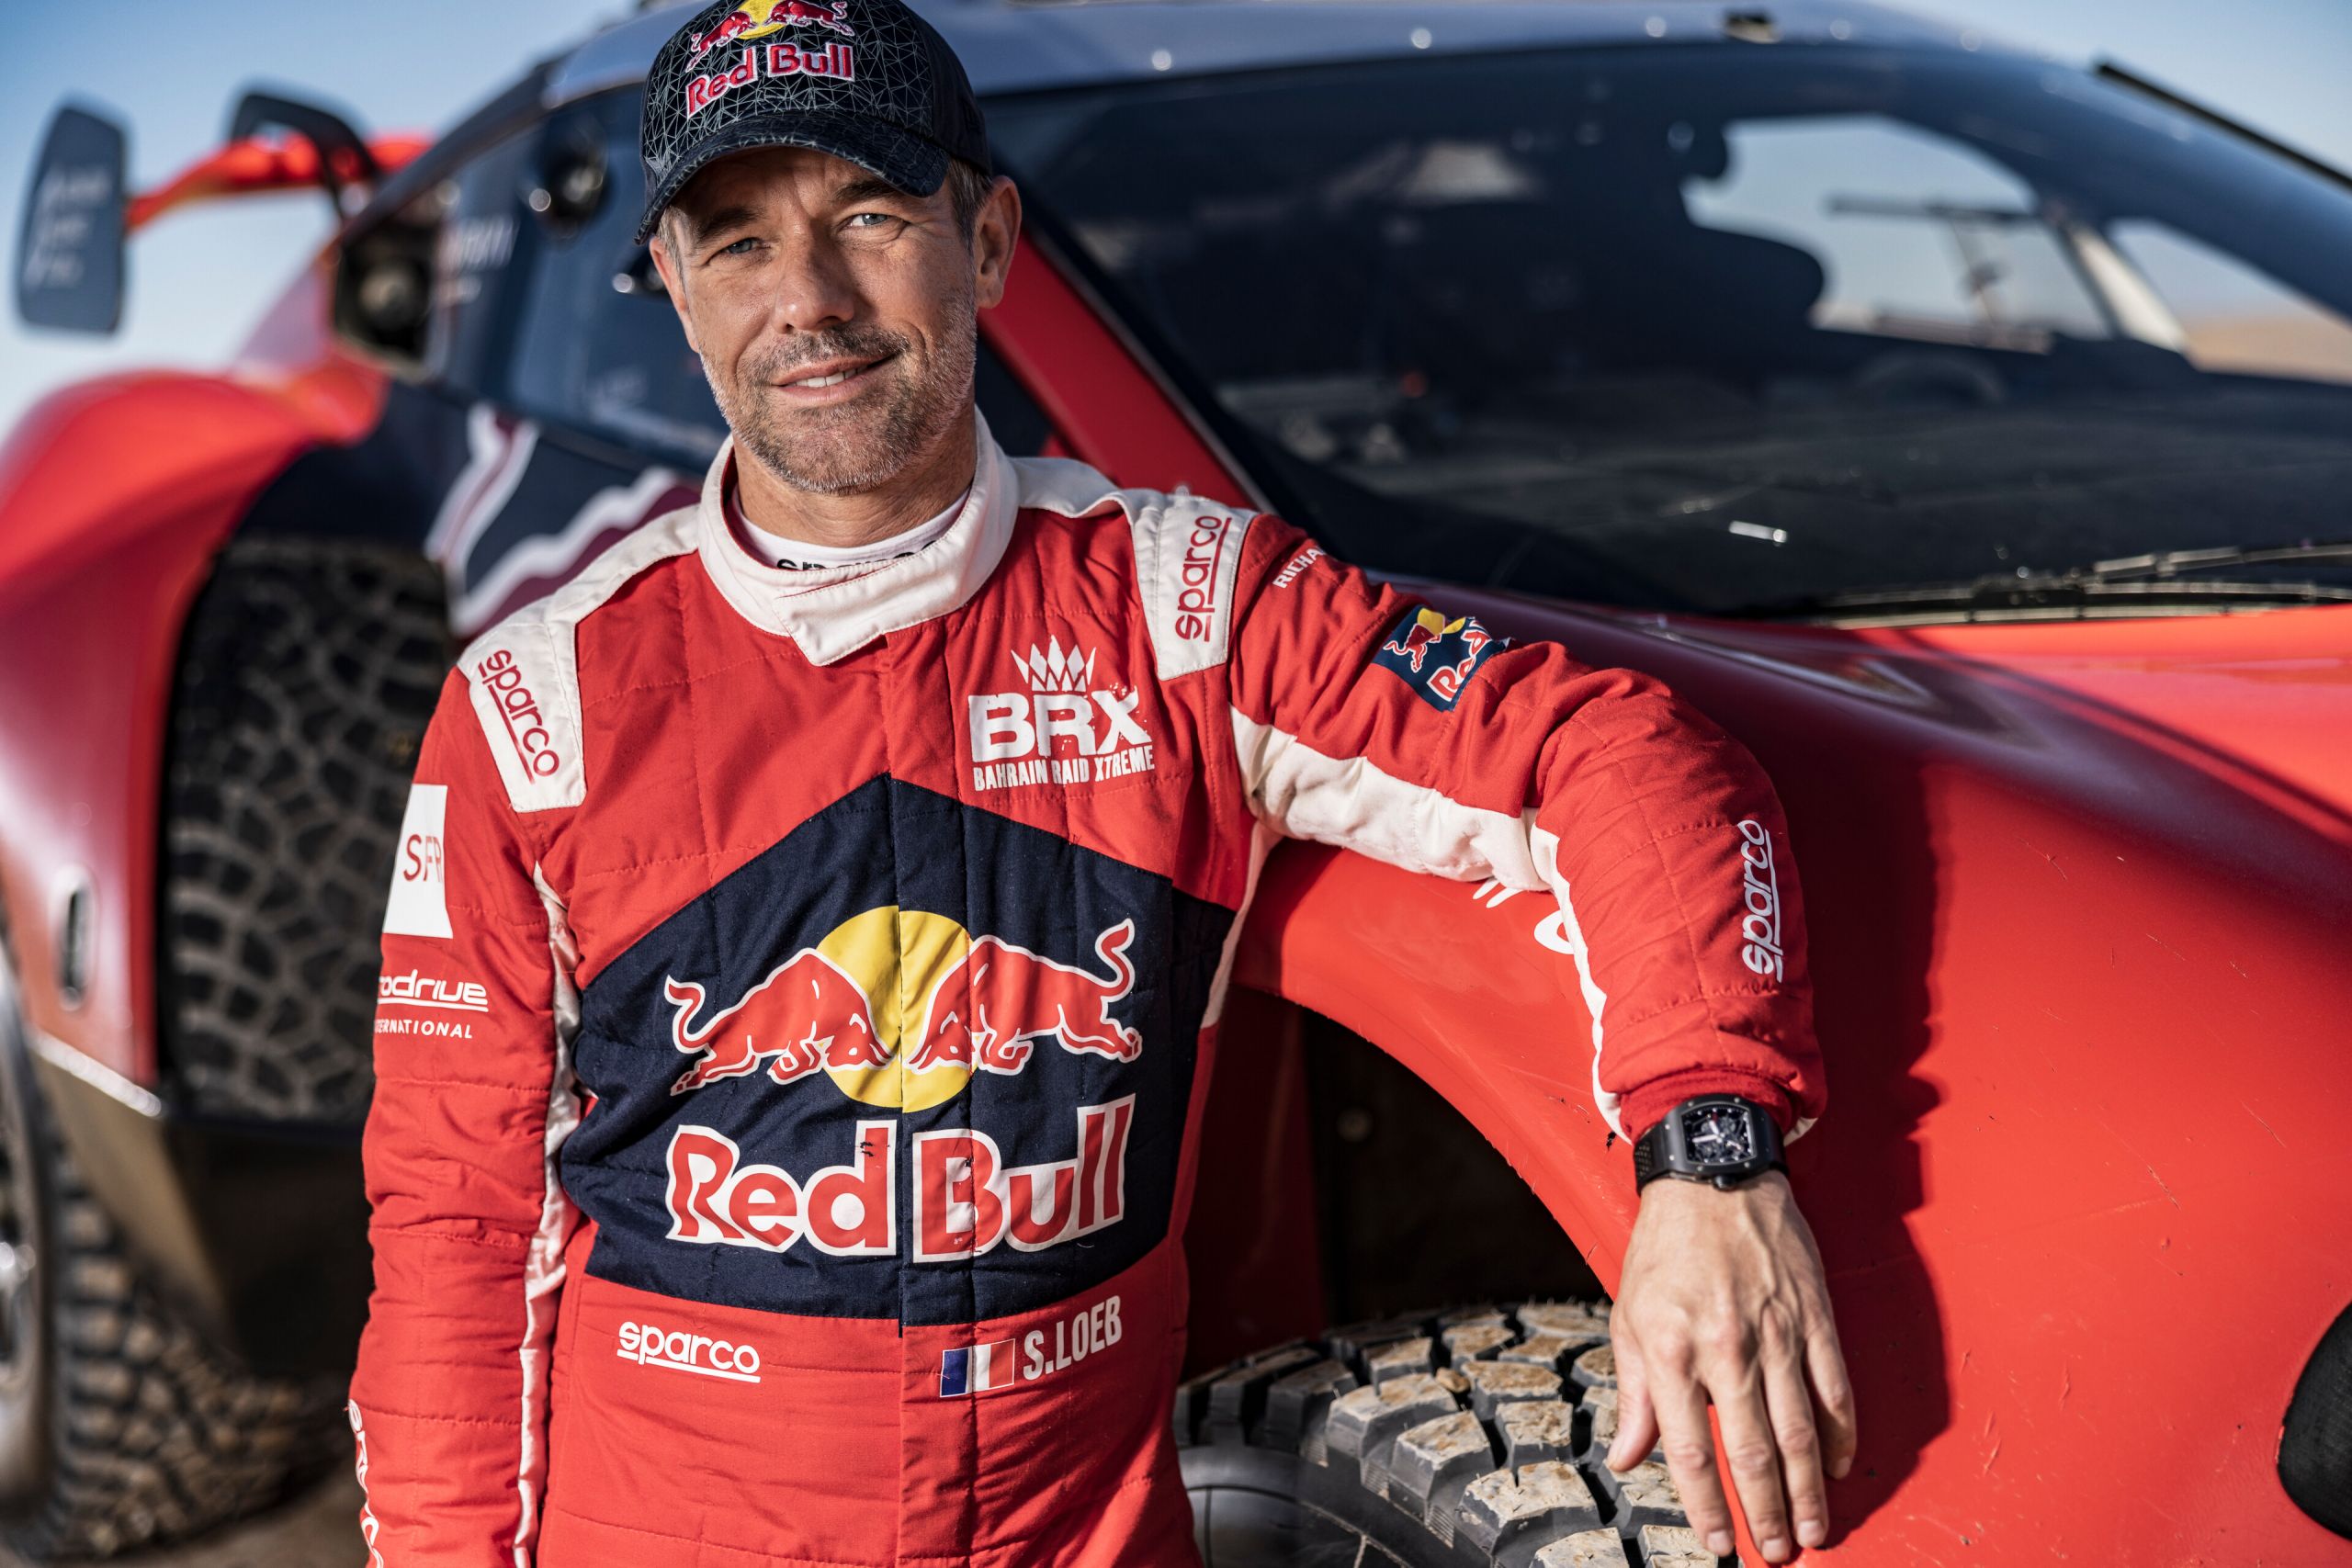 Sebastien Loeb redbull dakar rally team